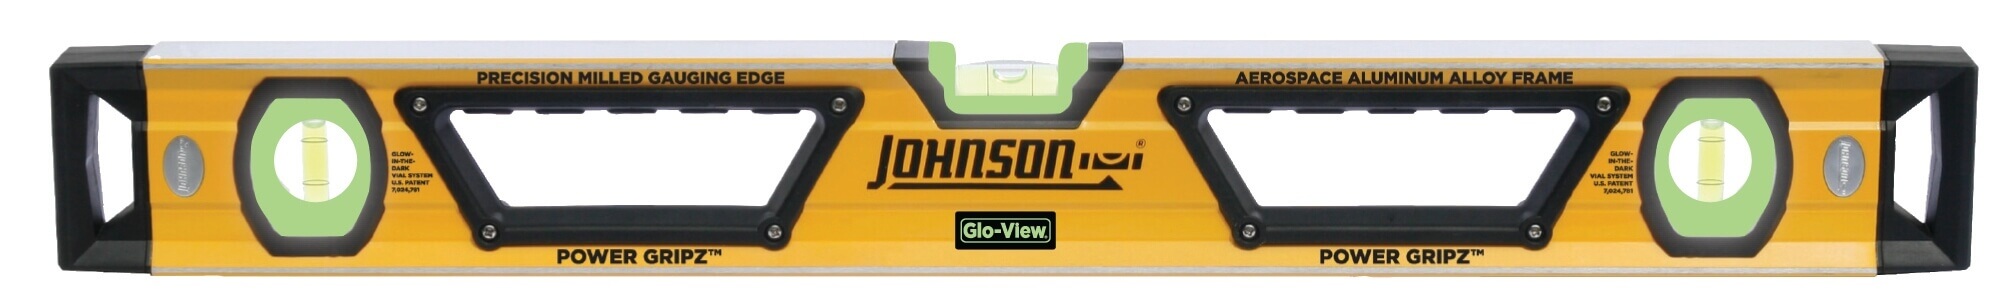 Johnson Level 24 Glo-View Heavy Duty Aluminum Box Level 1717-2400